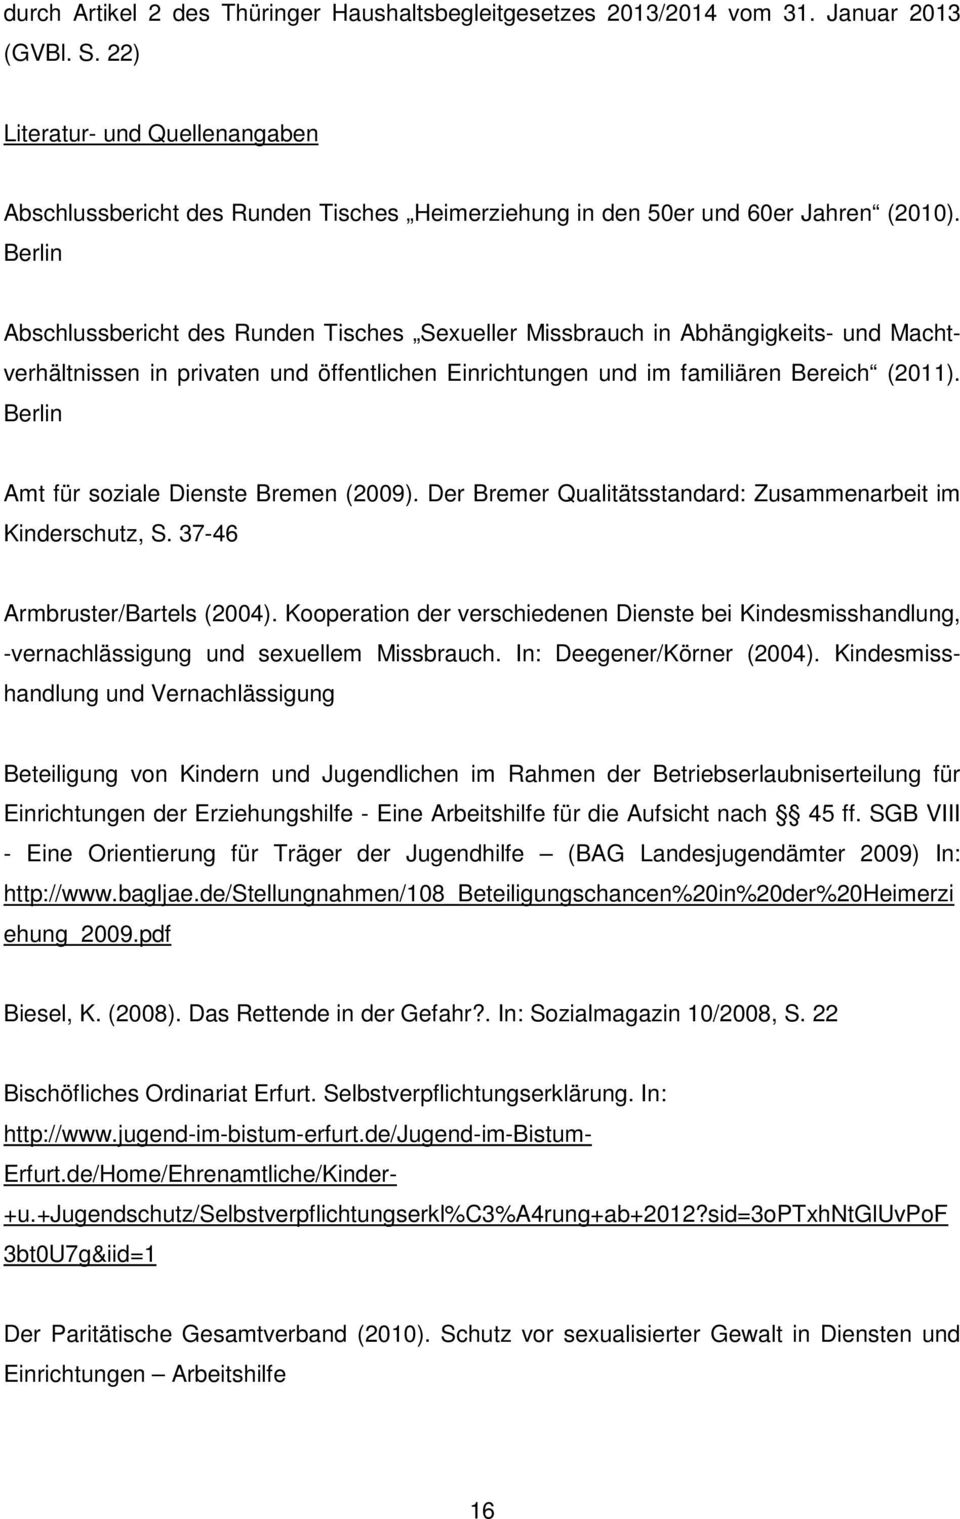 Berlin Abschlussbericht des Runden Tisches Sexueller Missbrauch in Abhängigkeits- und Machtverhältnissen in privaten und öffentlichen Einrichtungen und im familiären Bereich (2011).